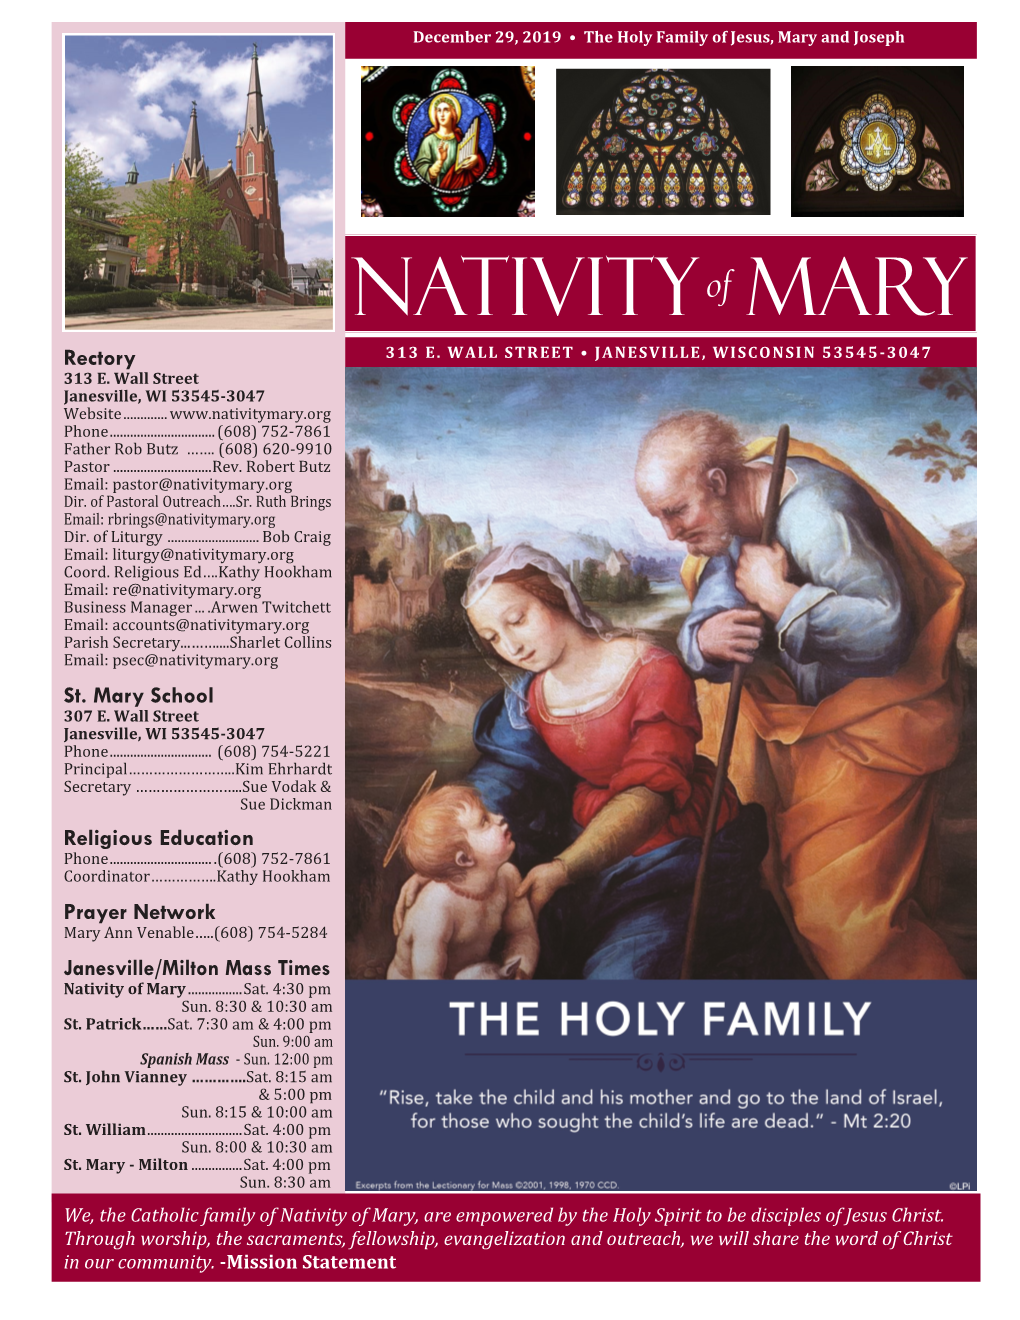 Nativity Mary